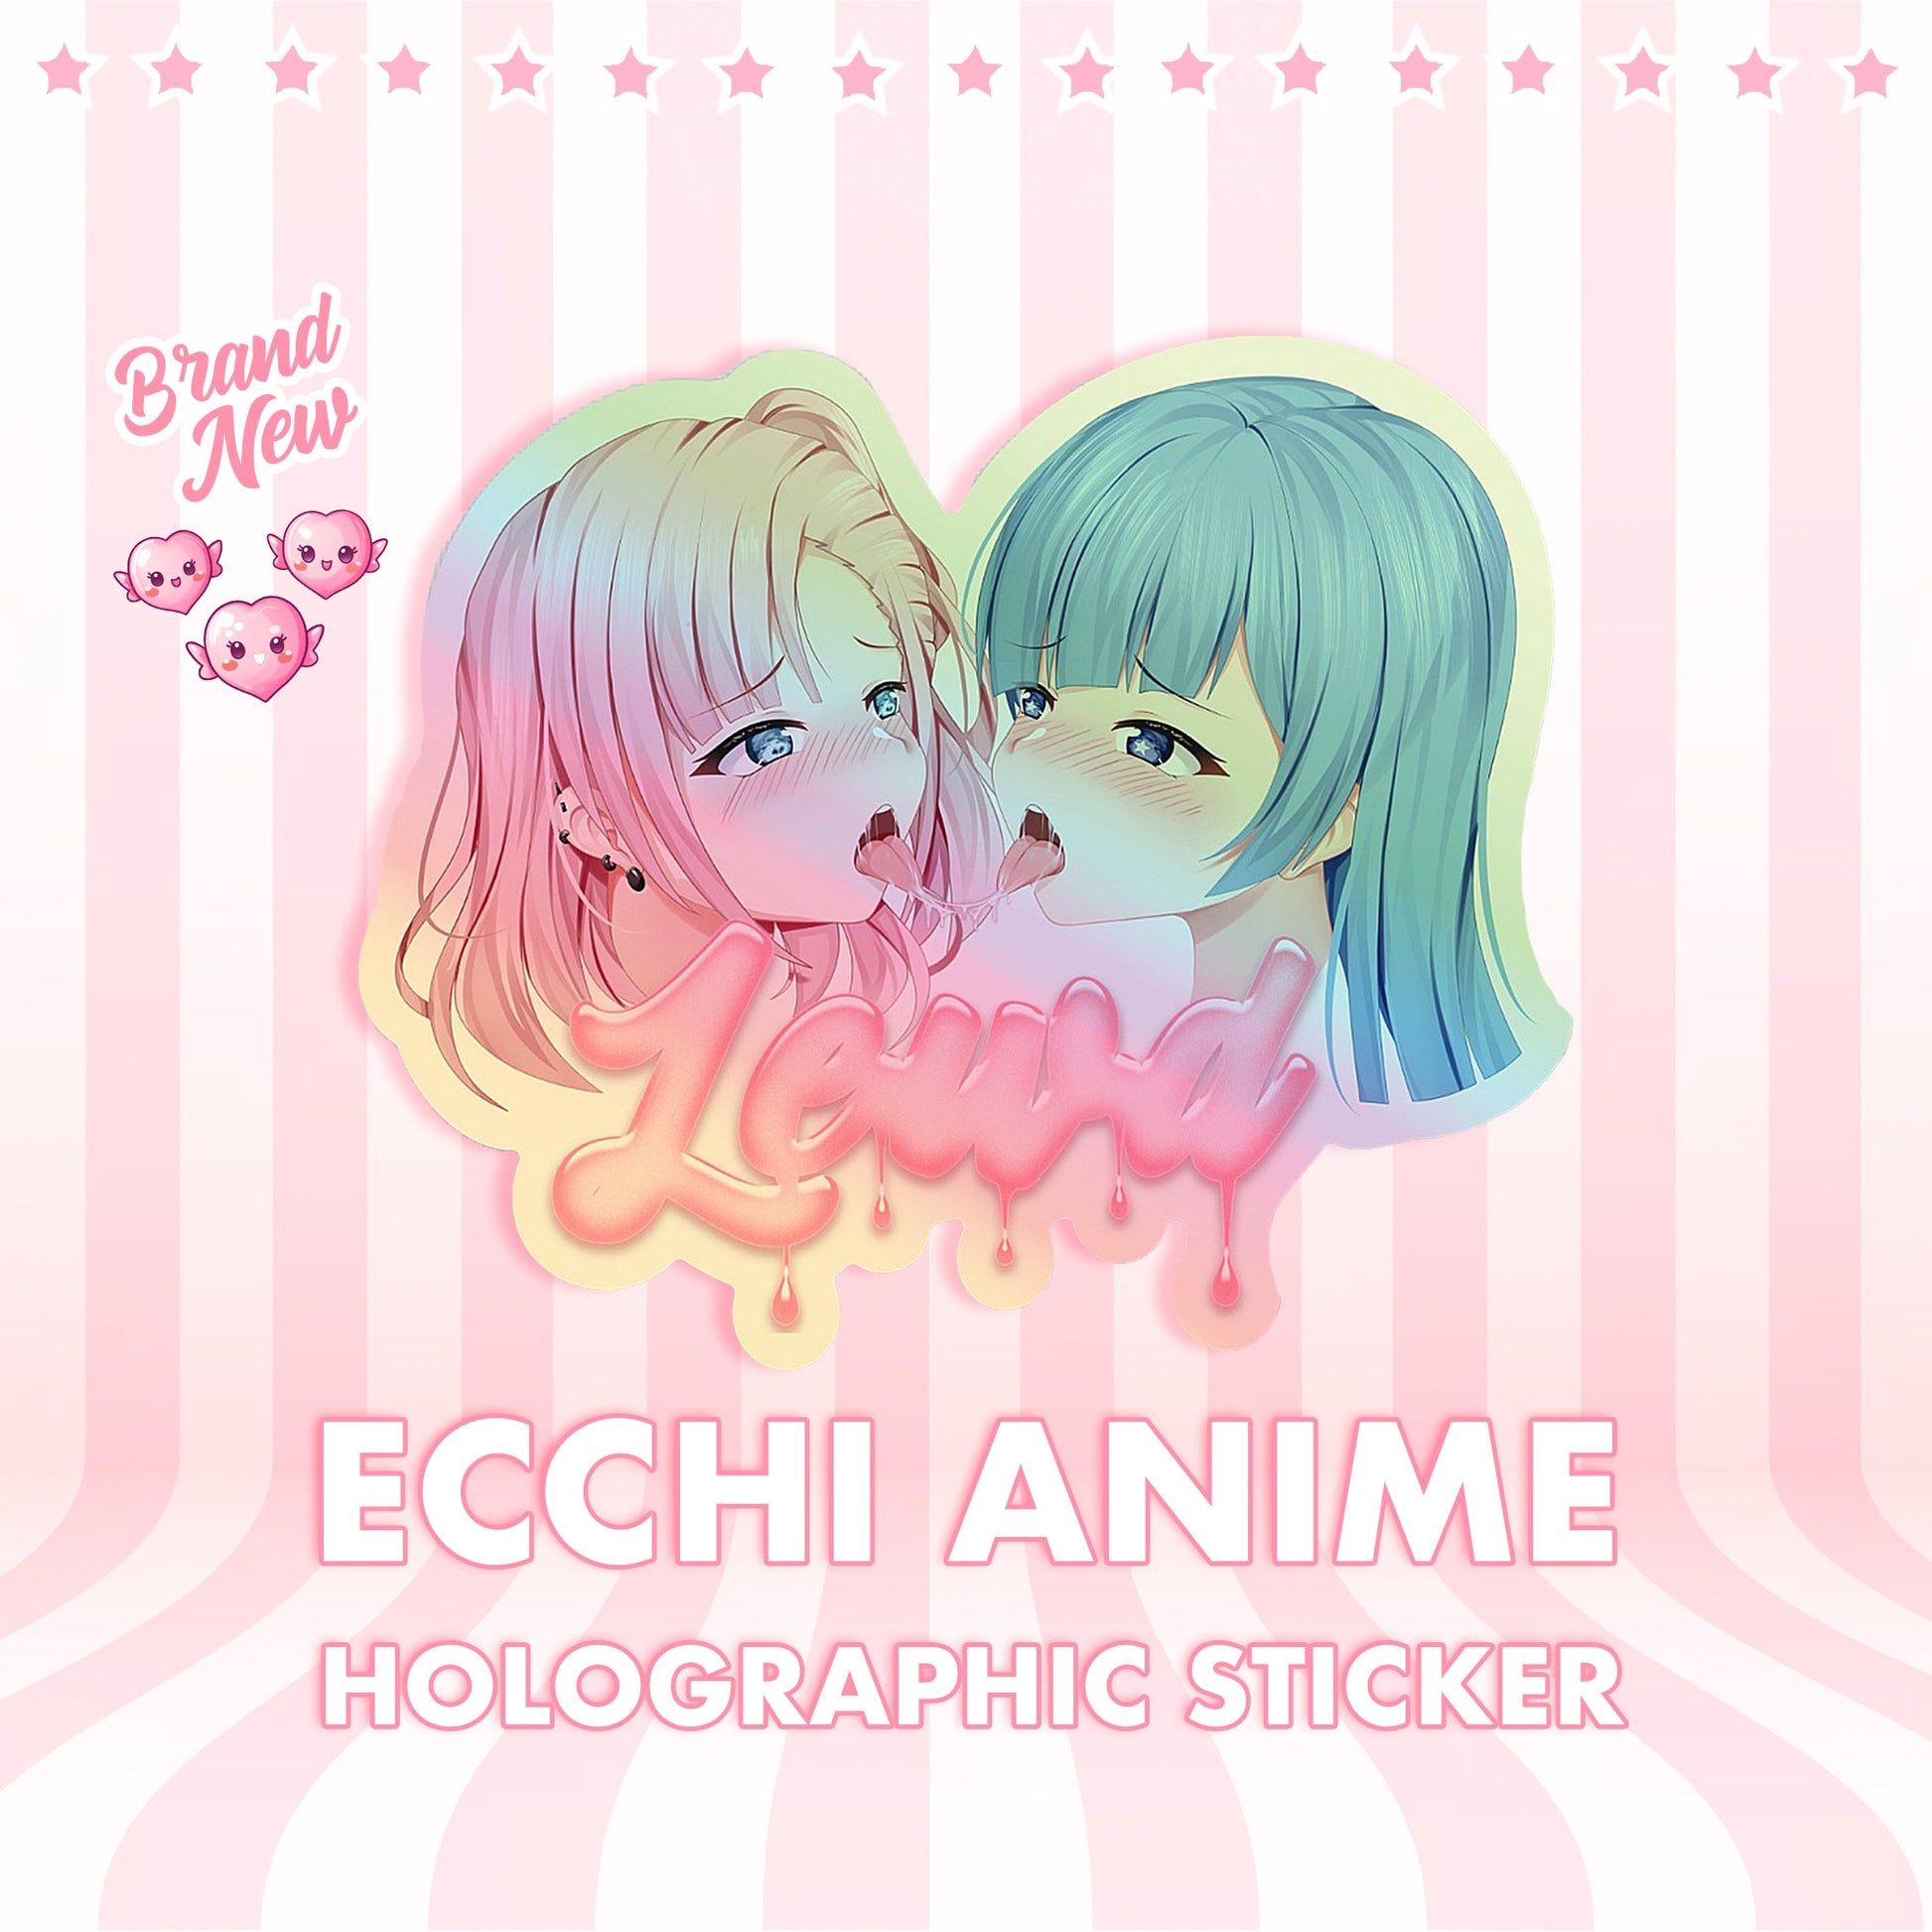 Ecchi Anime Holographic Sticker - Lewd Fashion